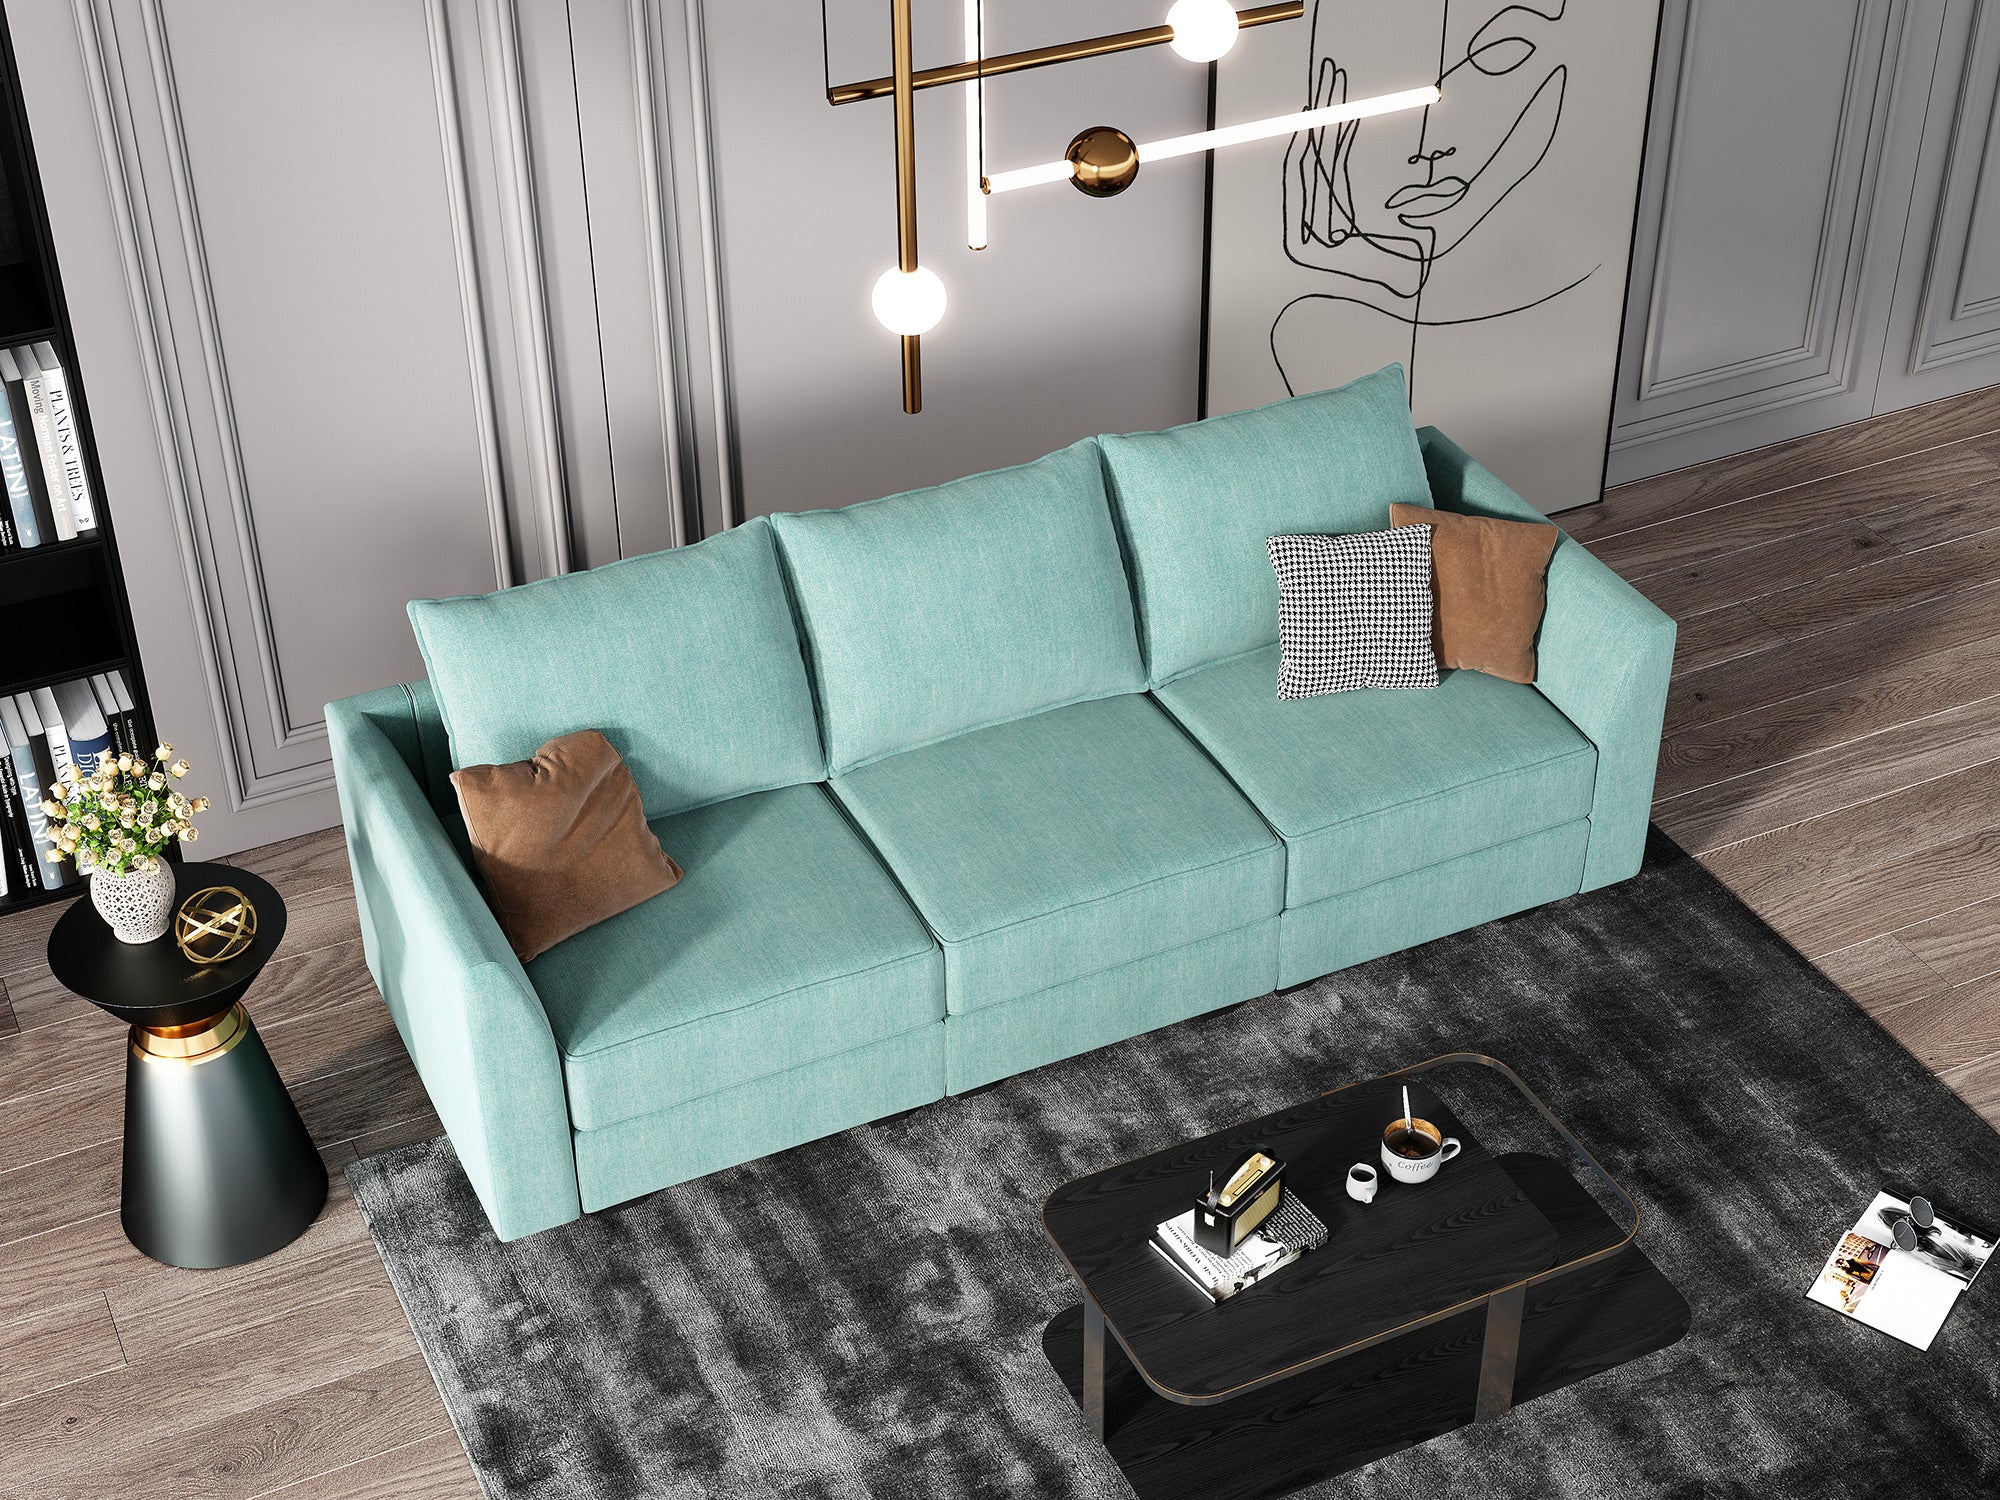 HONBAY 3-Seat Modular Sofa with Storage#Color_Aqua Blue